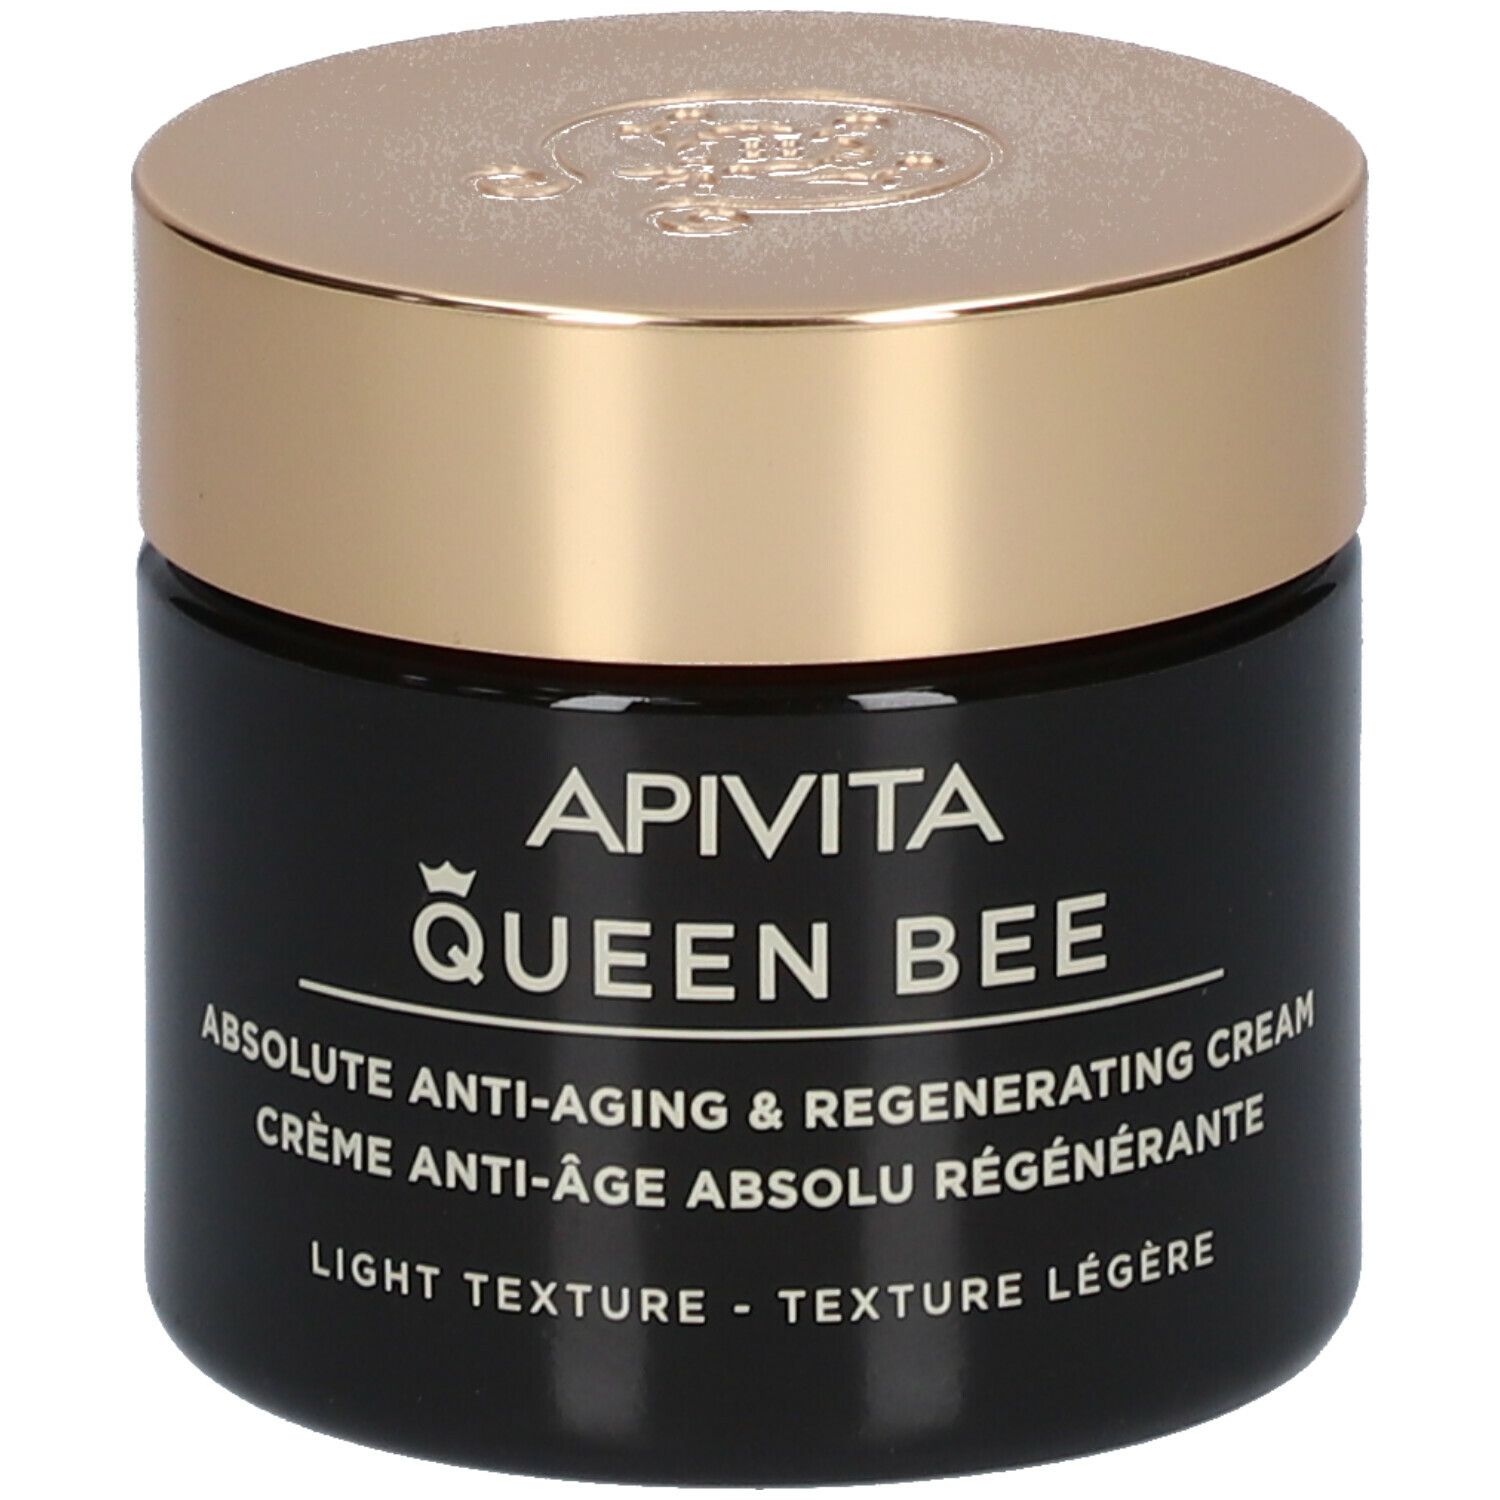 Apivita Queen BEE Crème Anti-âge Absolu Régérérante - Texture légère